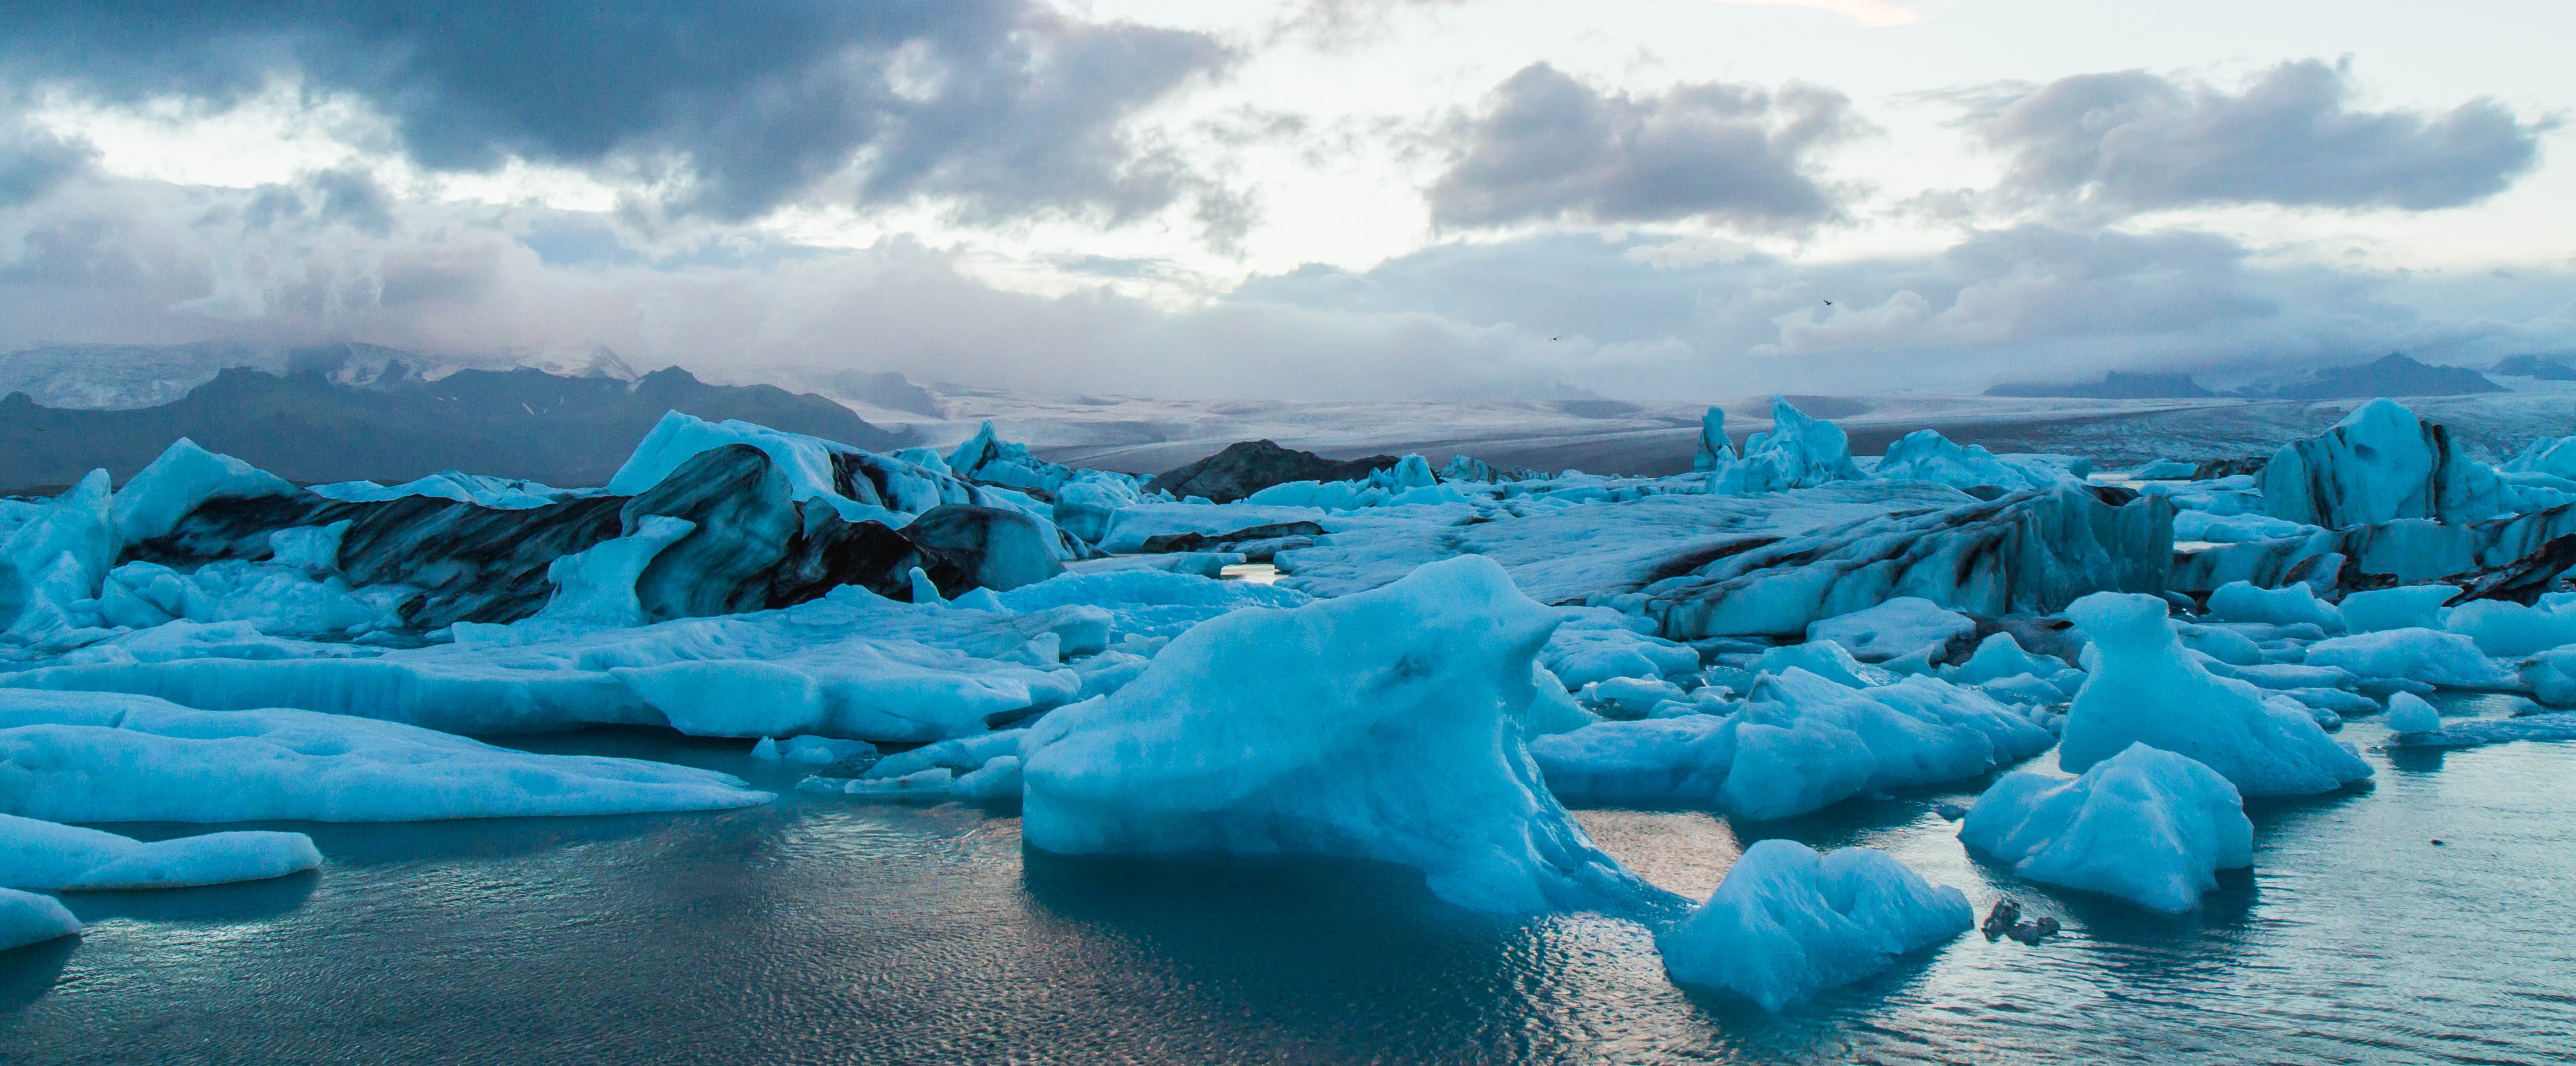 Хребты ледовитого океана. Рельеф островной Арктики. Исландия Северный Ледовитый океан. Льды Северного Ледовитого океана. Ледники островной Арктики.